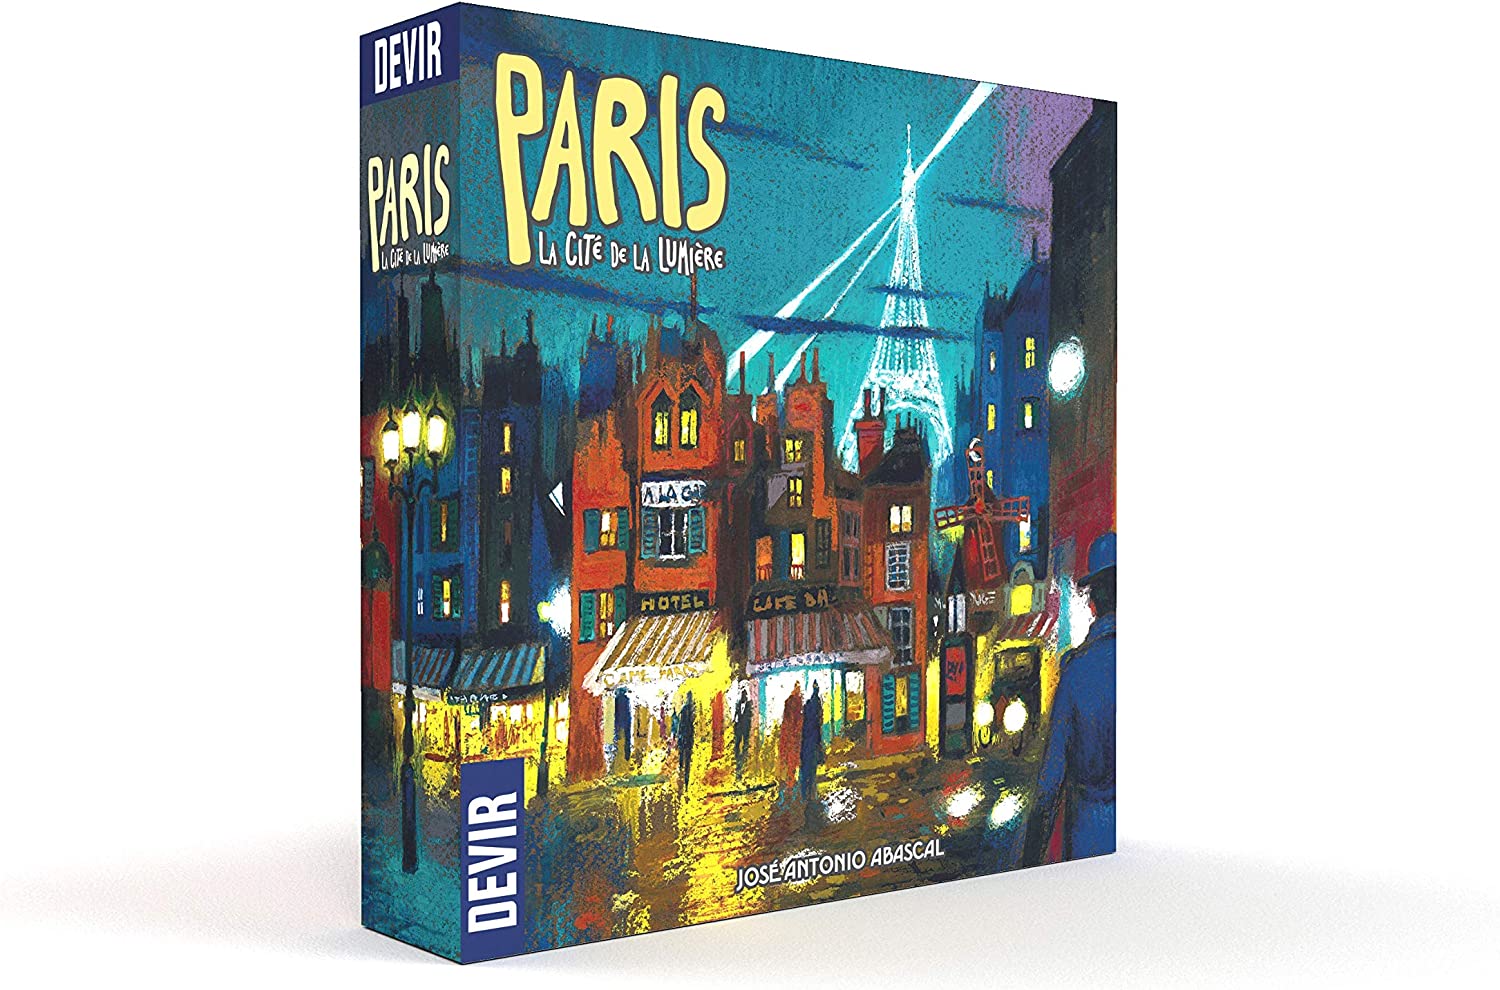 A blue box for the two-player board game "Paris: La Cite de la Lumiere." 